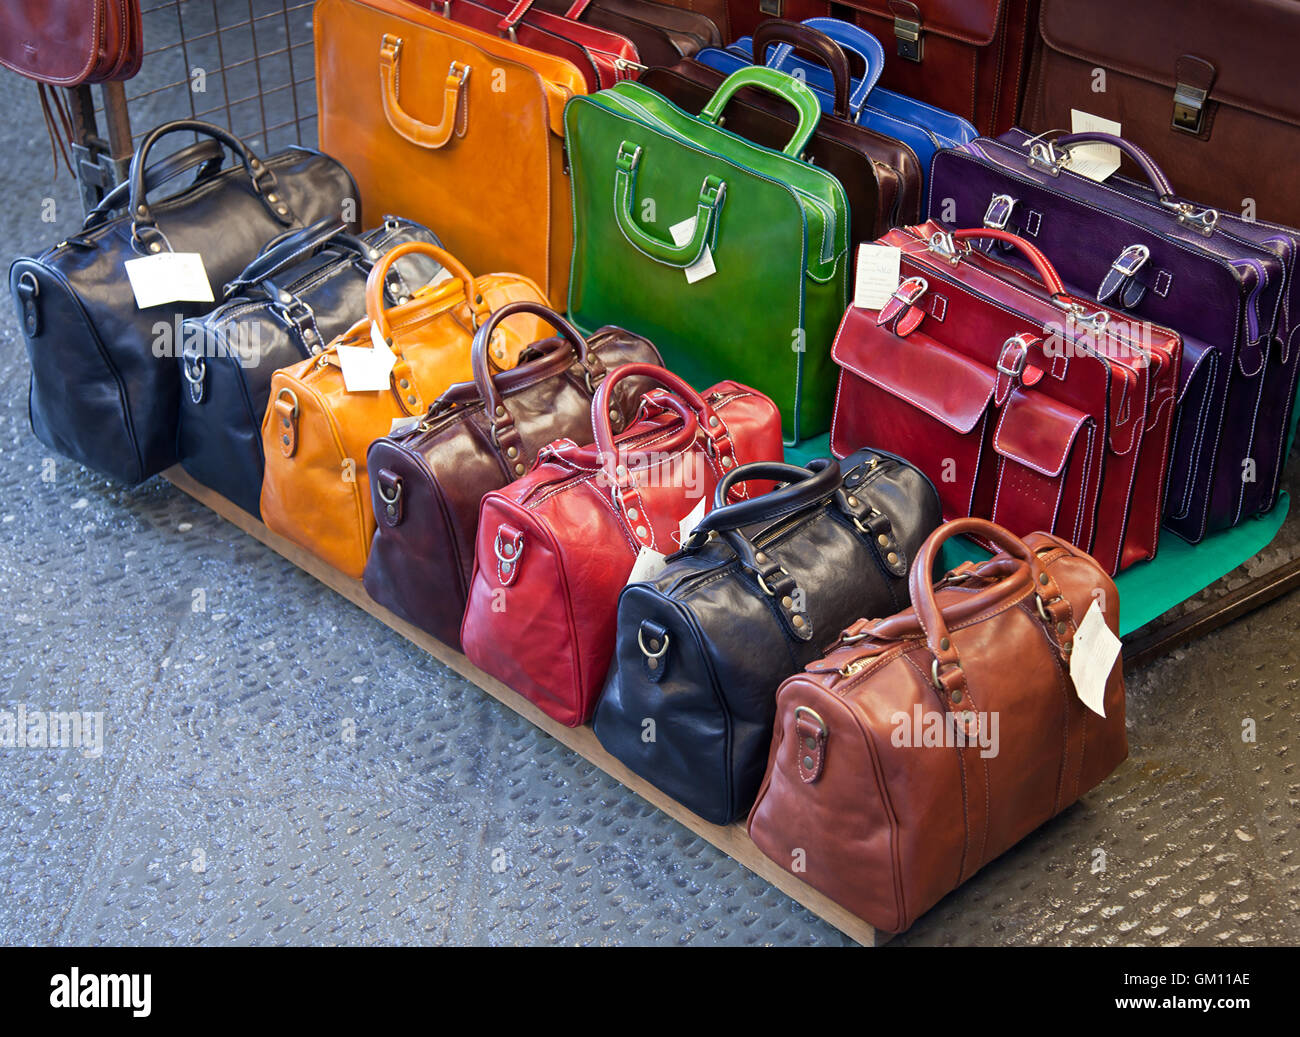 Ledertaschen für Verkauf in den Märkten von Florenz, Italien  Stockfotografie - Alamy